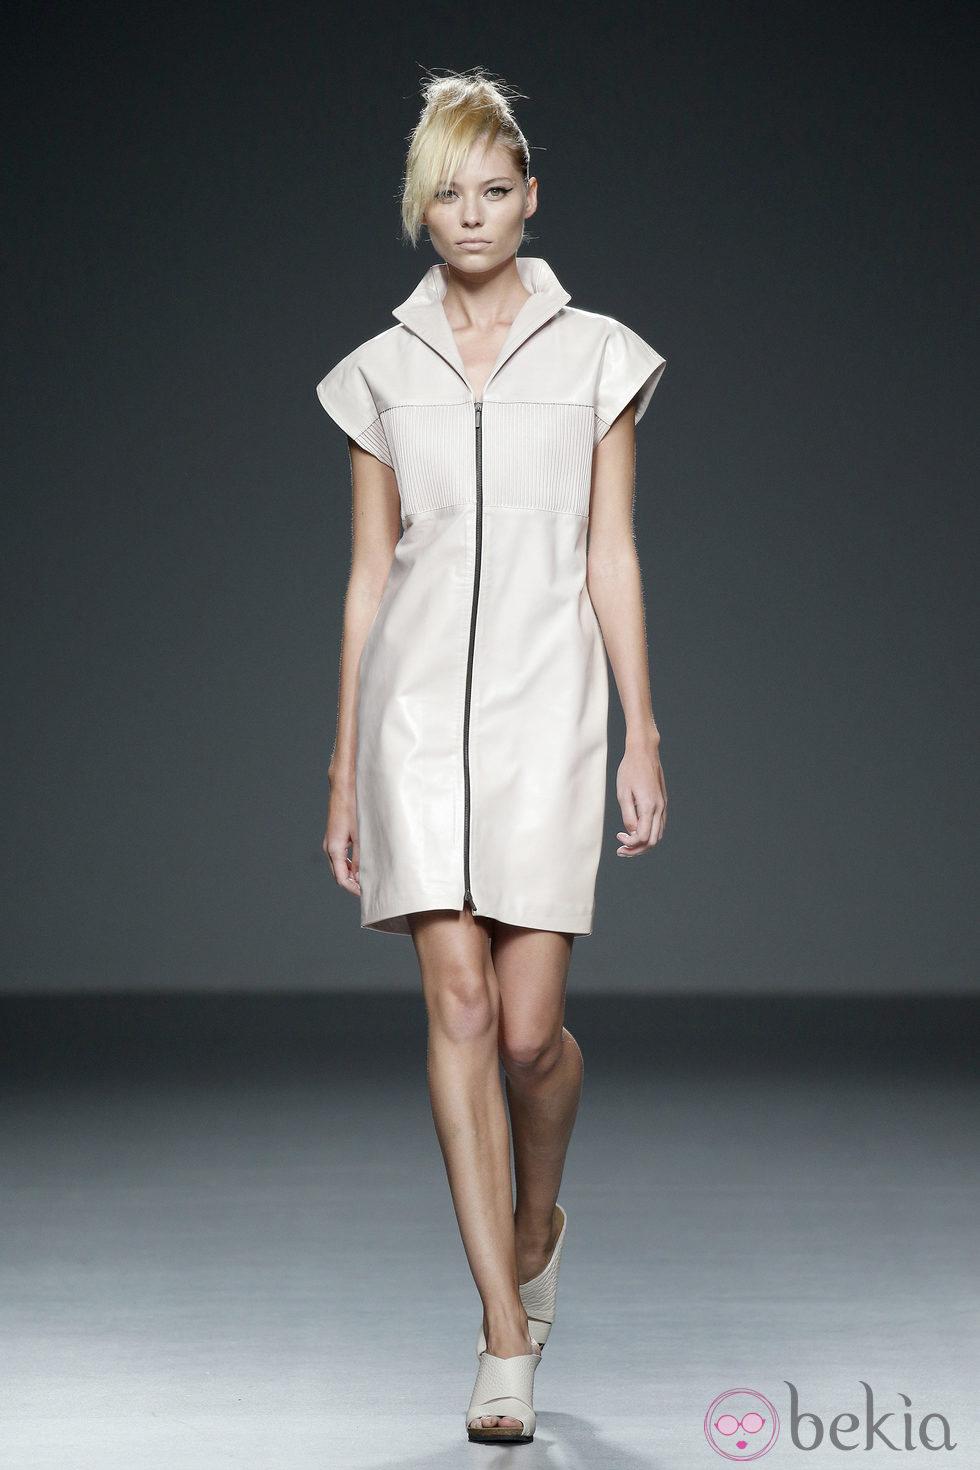 Vestido blanco de piel de primavera/verano 2015 de Etxeberría en Madrid Fashion Week